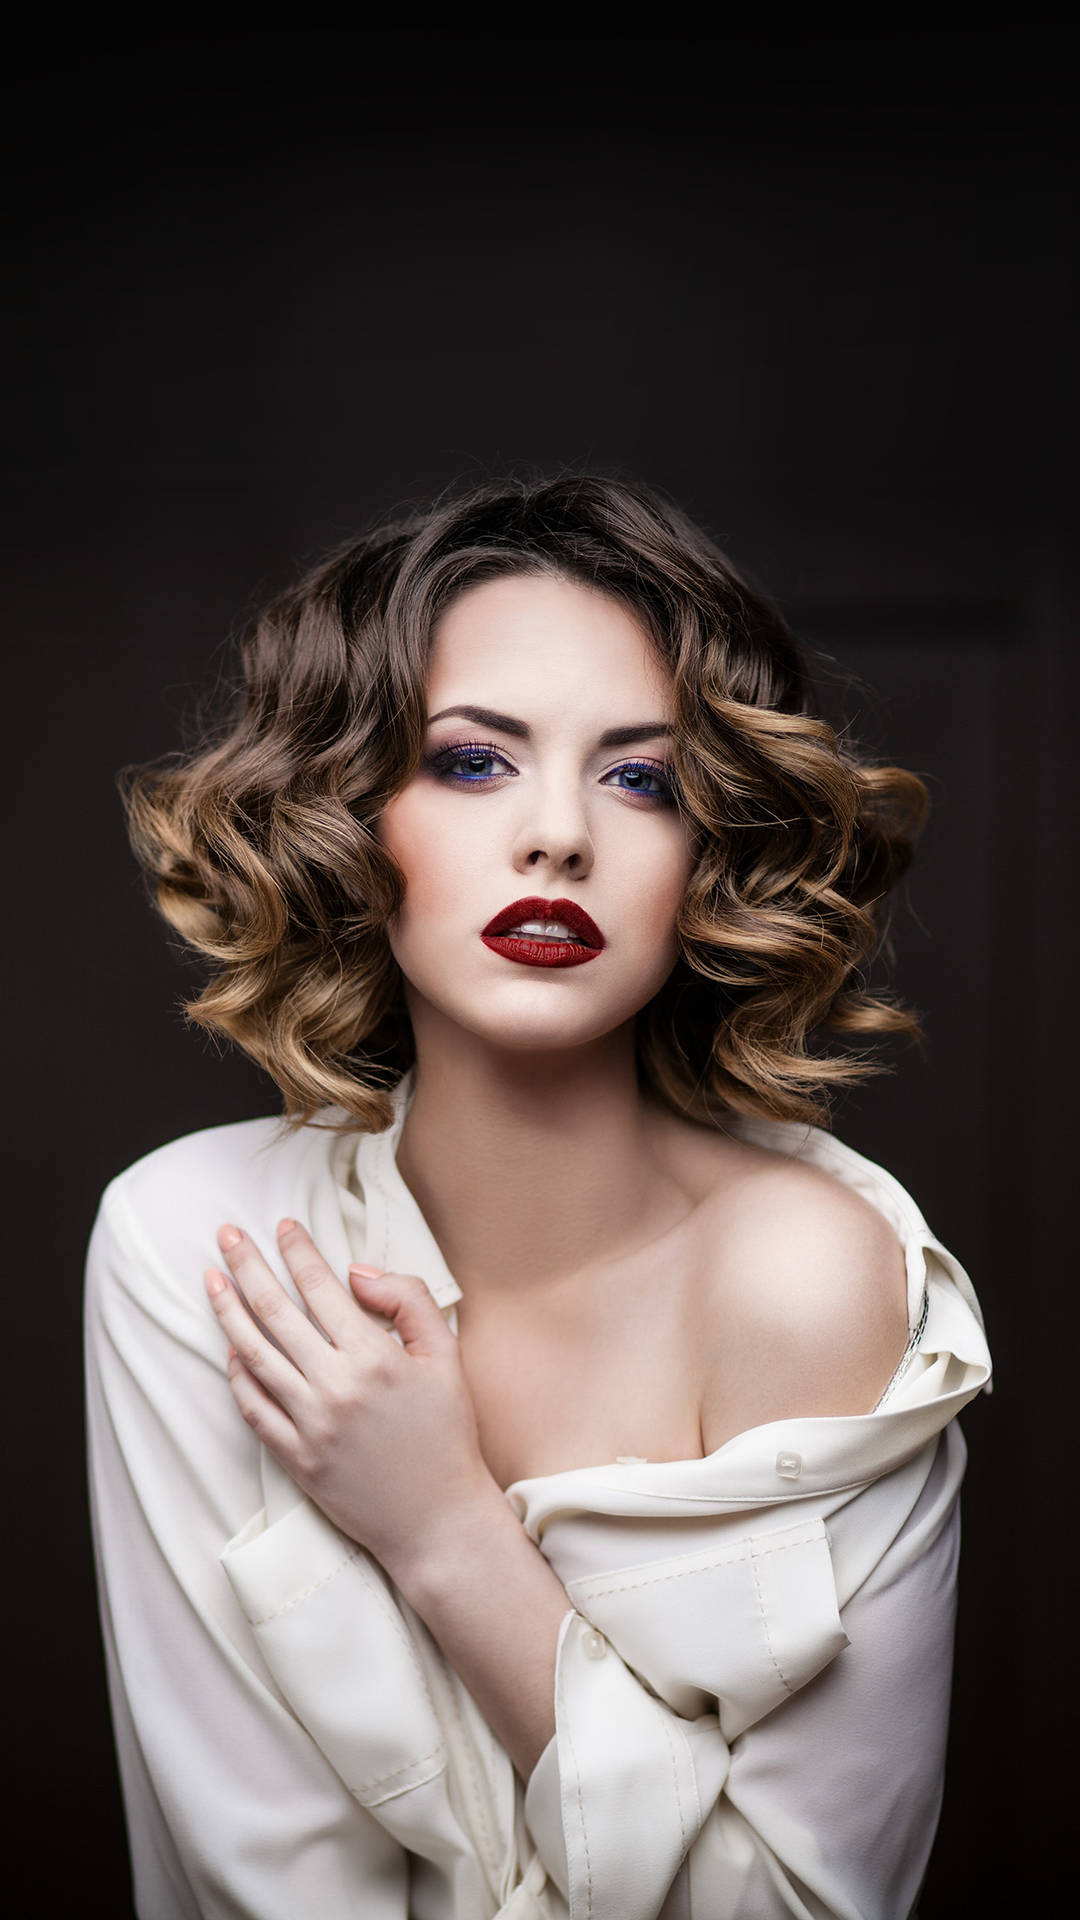 Radiance in Romance - Stunning Female Model Showcasing Brunette Hair Highlights Wallpaper